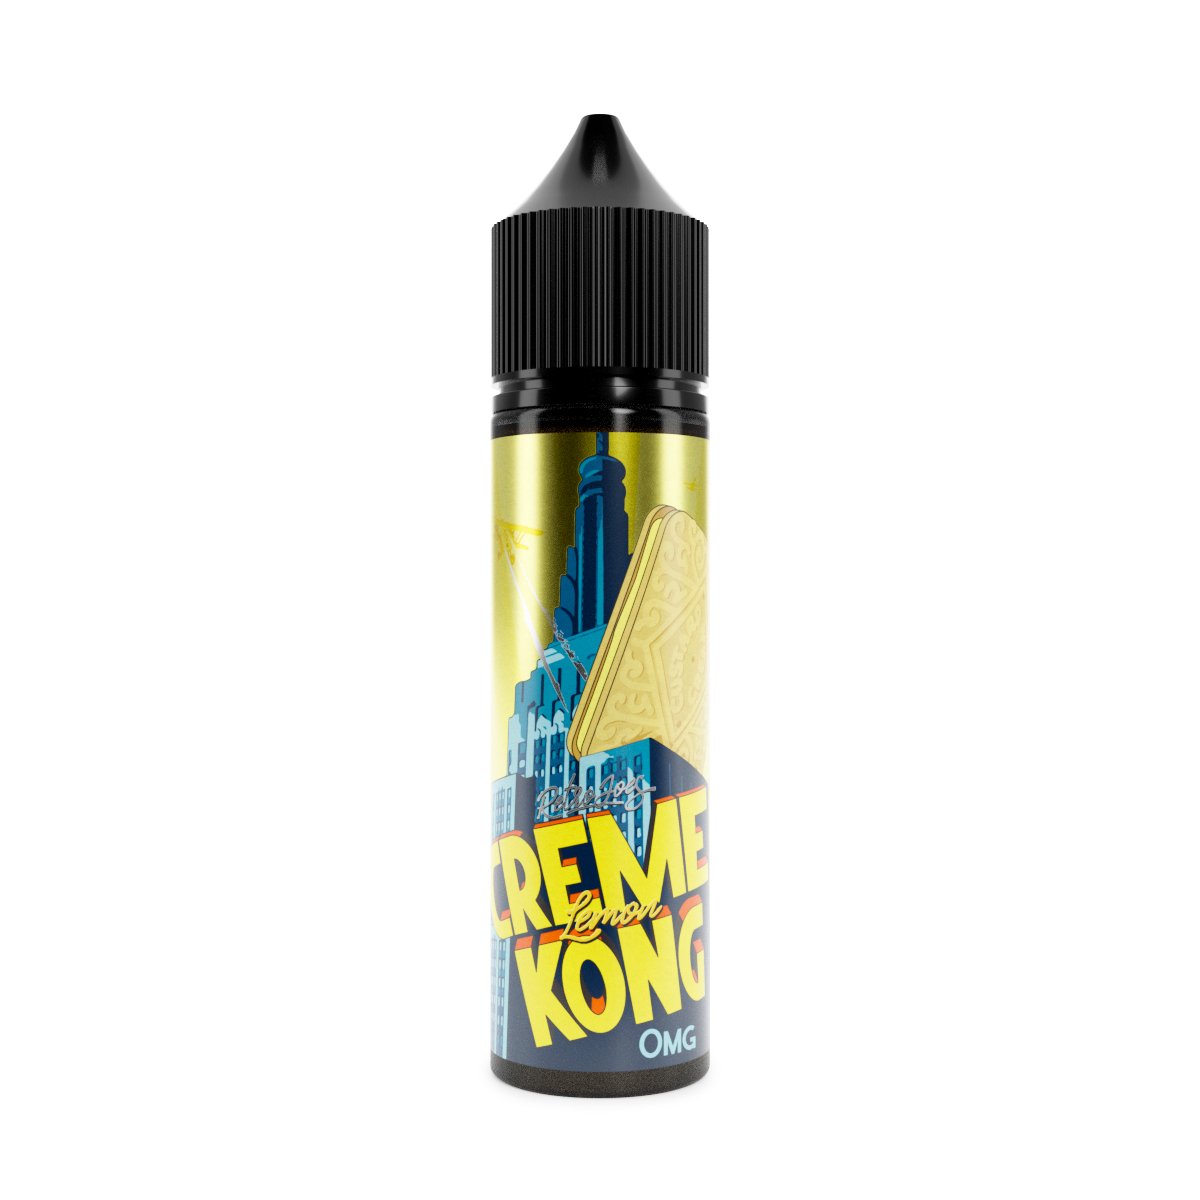 Retro Joes Creme Kong Lemon 0mg 50ml Shortfill E-Liquid